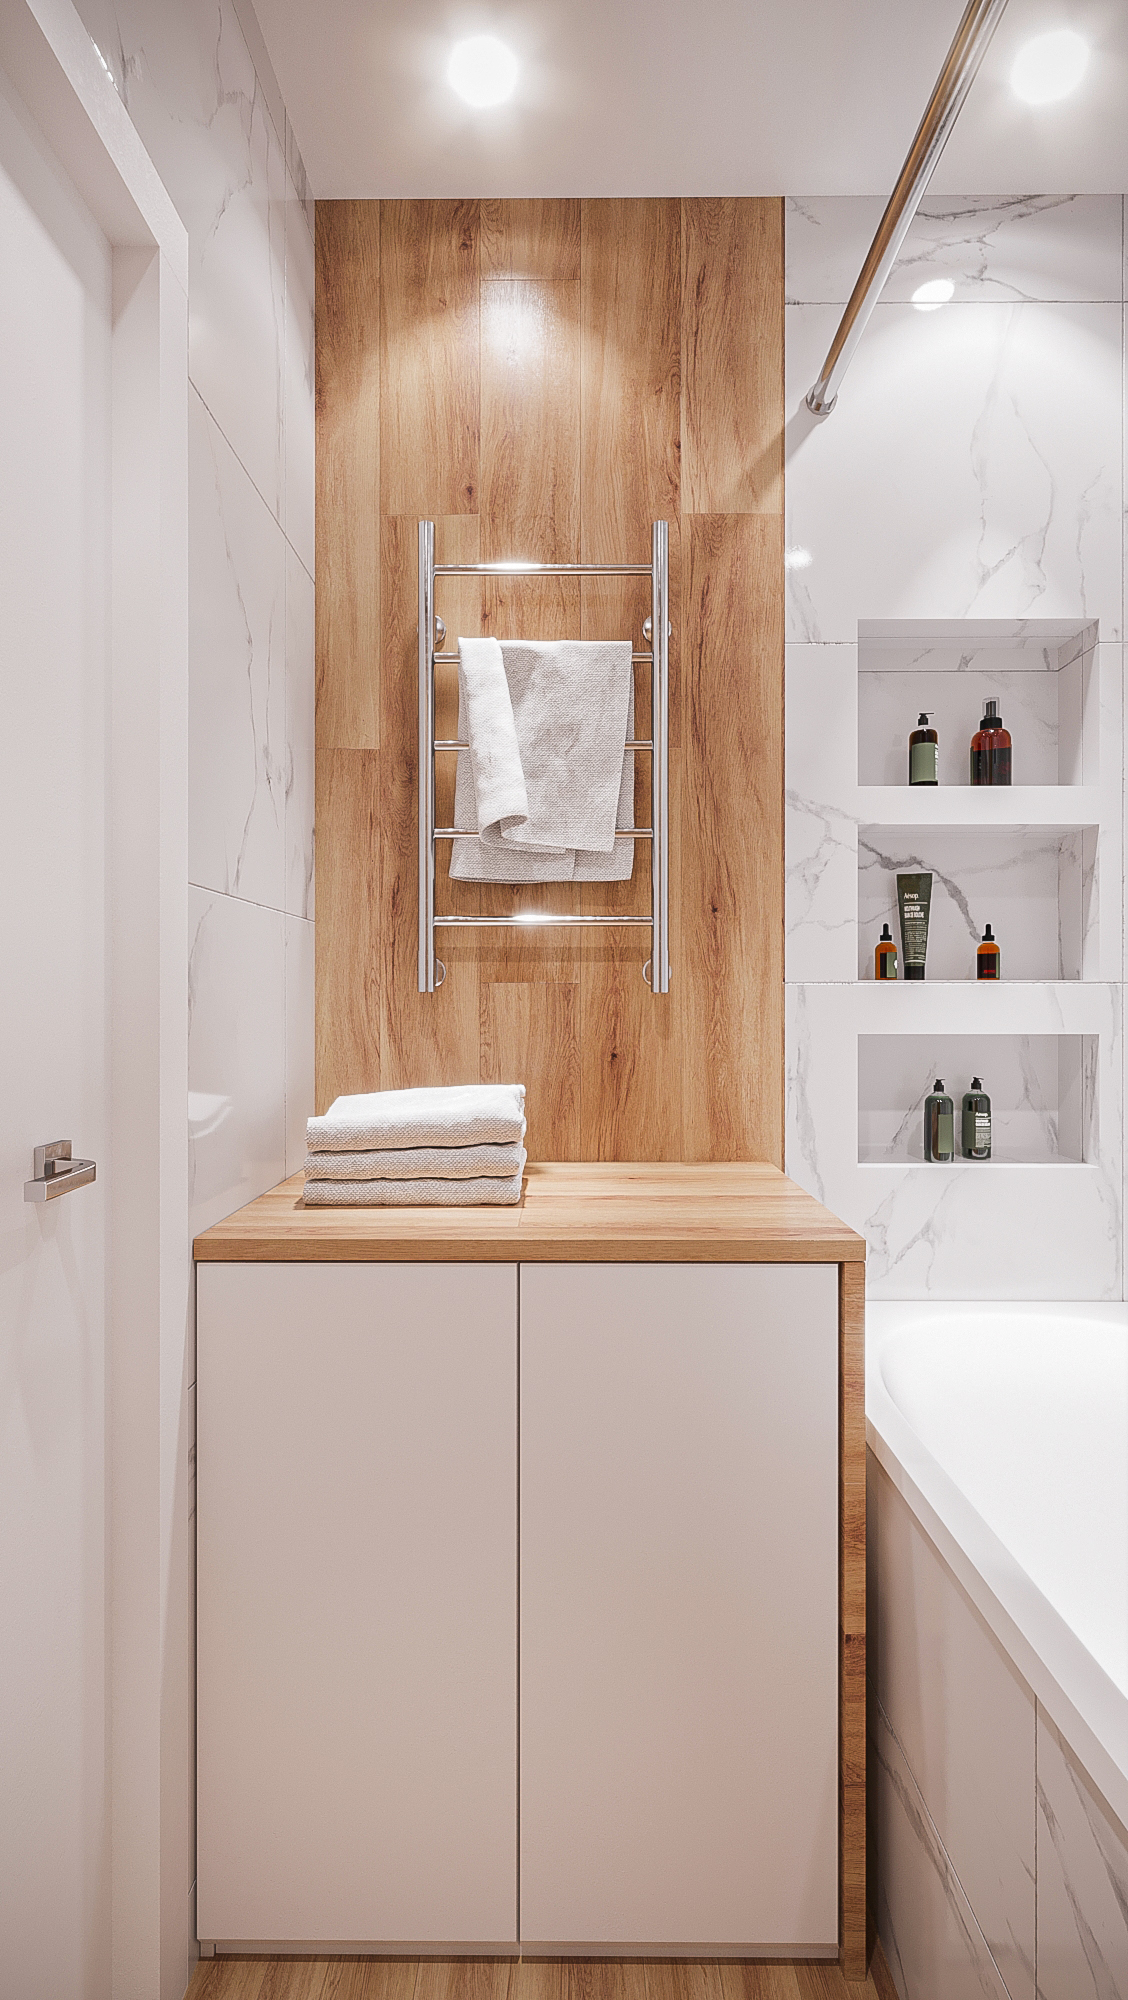 Salle de bain style scandinave dans 3d max corona render image